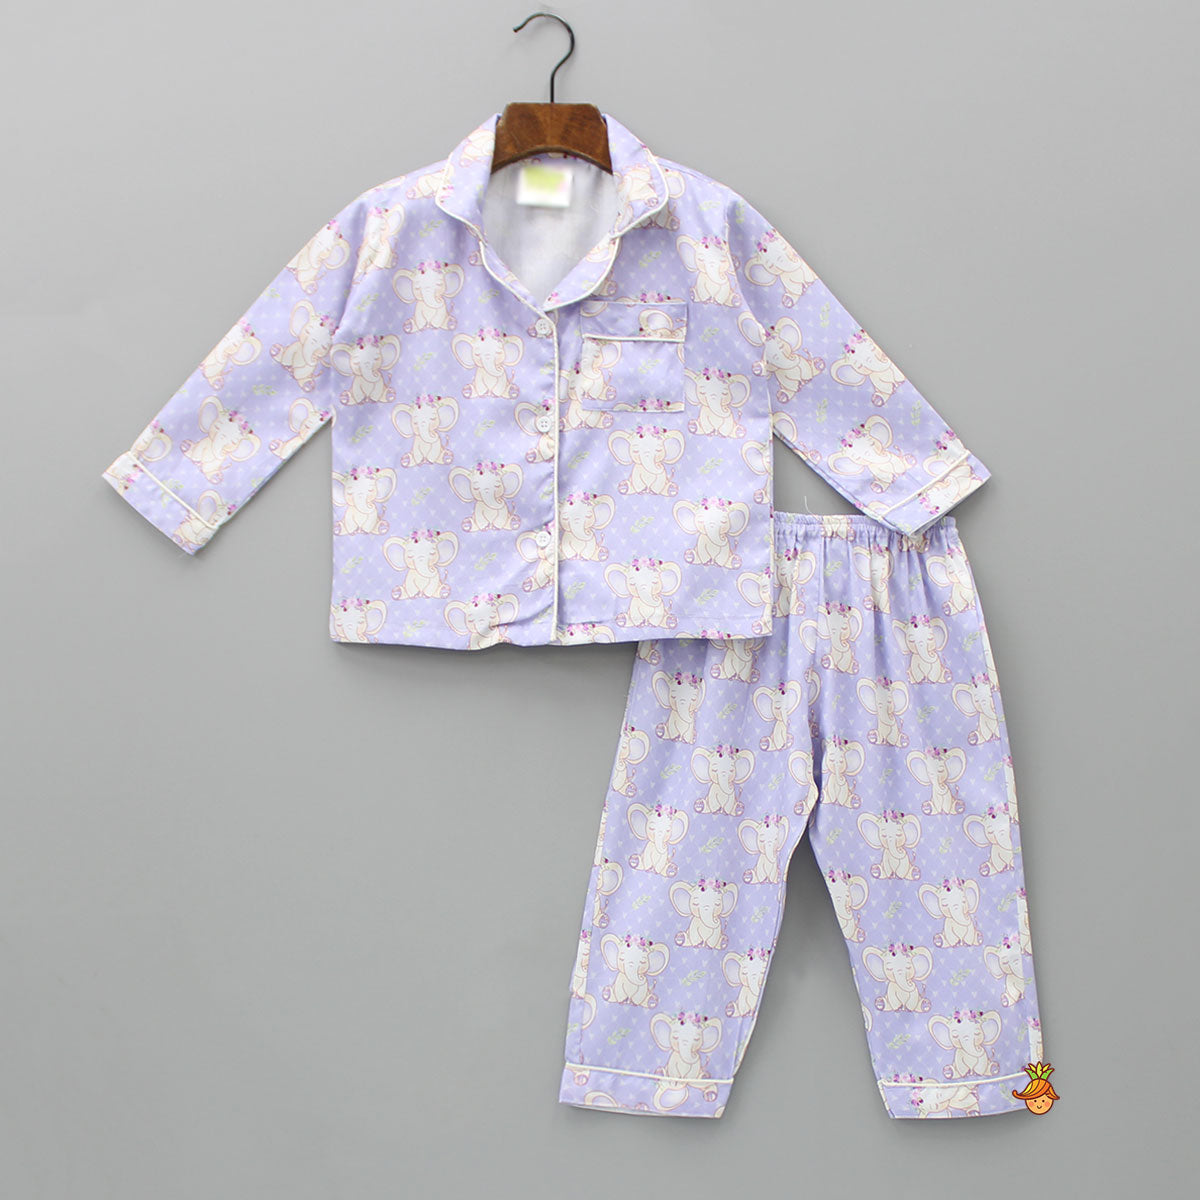 Pre Order: Cute Printed Lilac Sleepwear